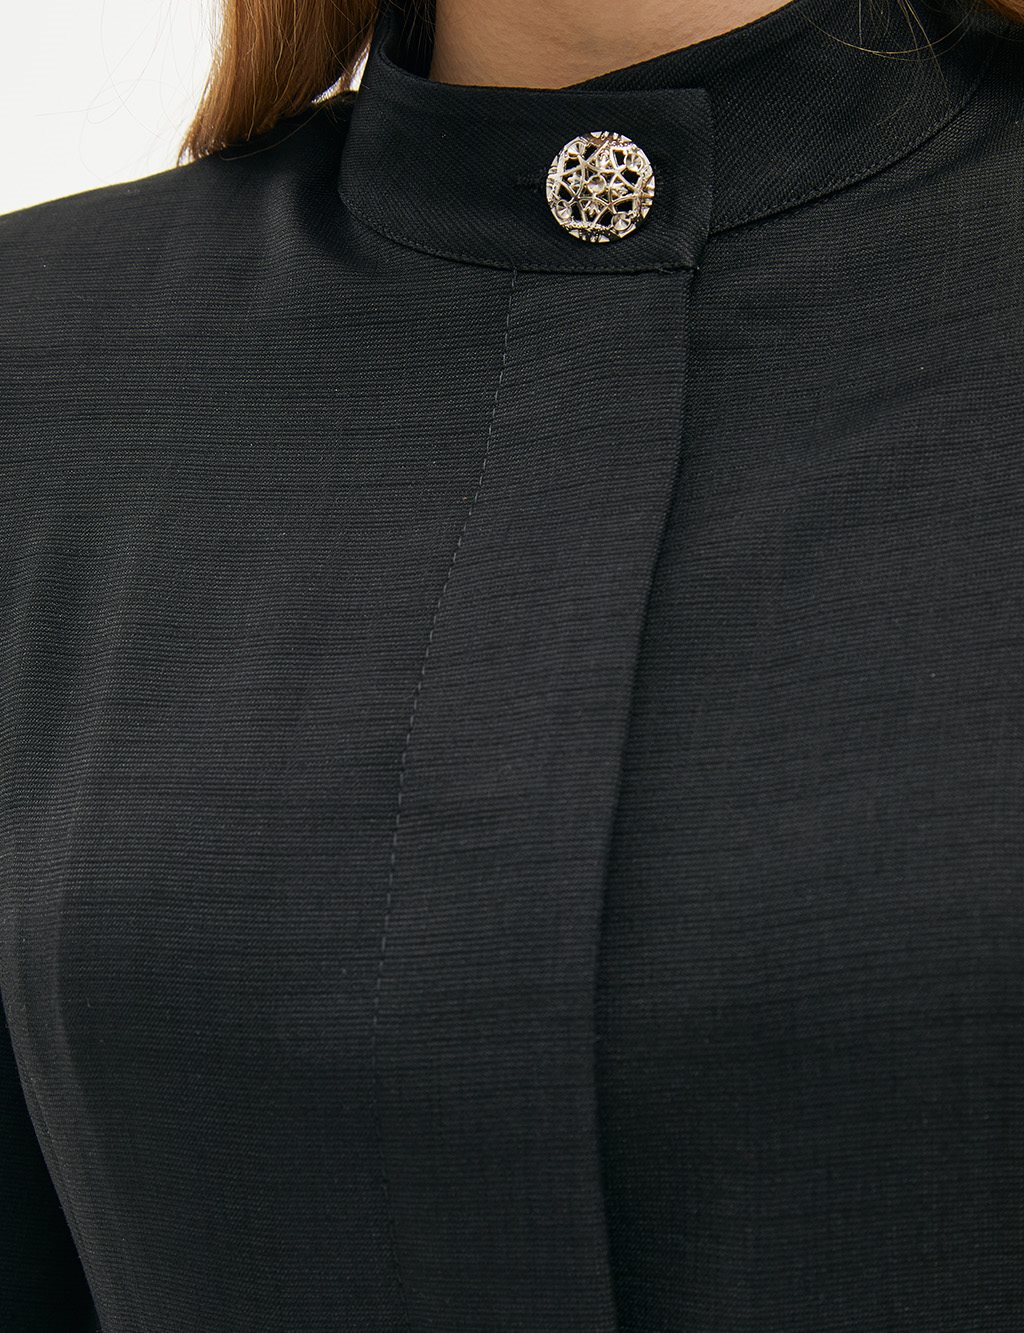 Striped Sash Detailed Dika Collar Topcoat Black